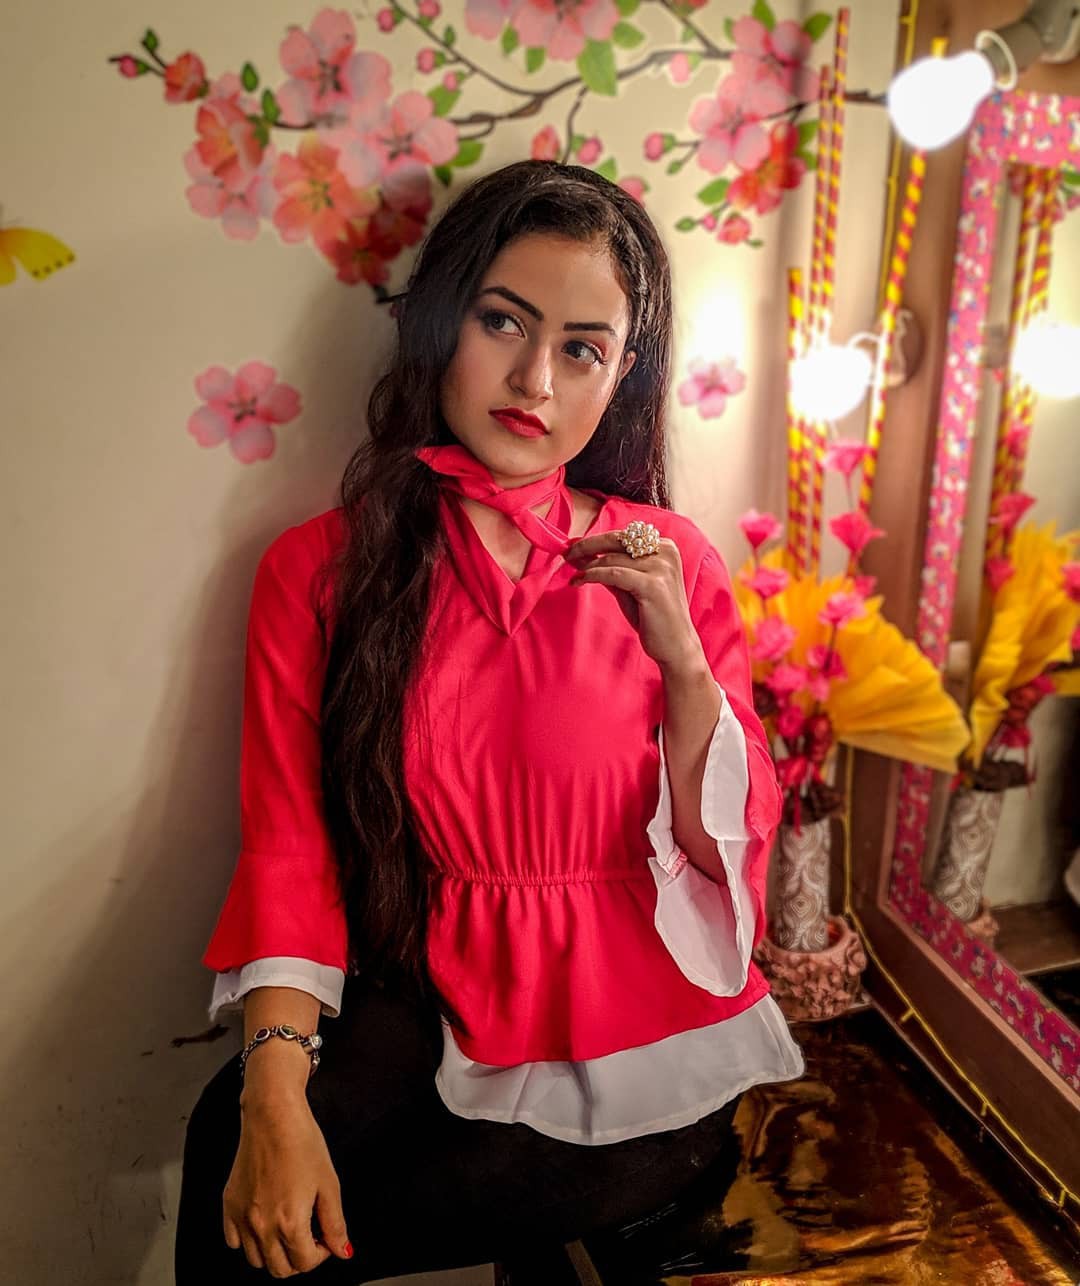 Farhi's Parvez Jarimari Instagram, sesión de fotos, ropa formal: Chicas hermosas,  Ropa formal,  Sesión de fotos,  Farhina Parvez Jarimari  